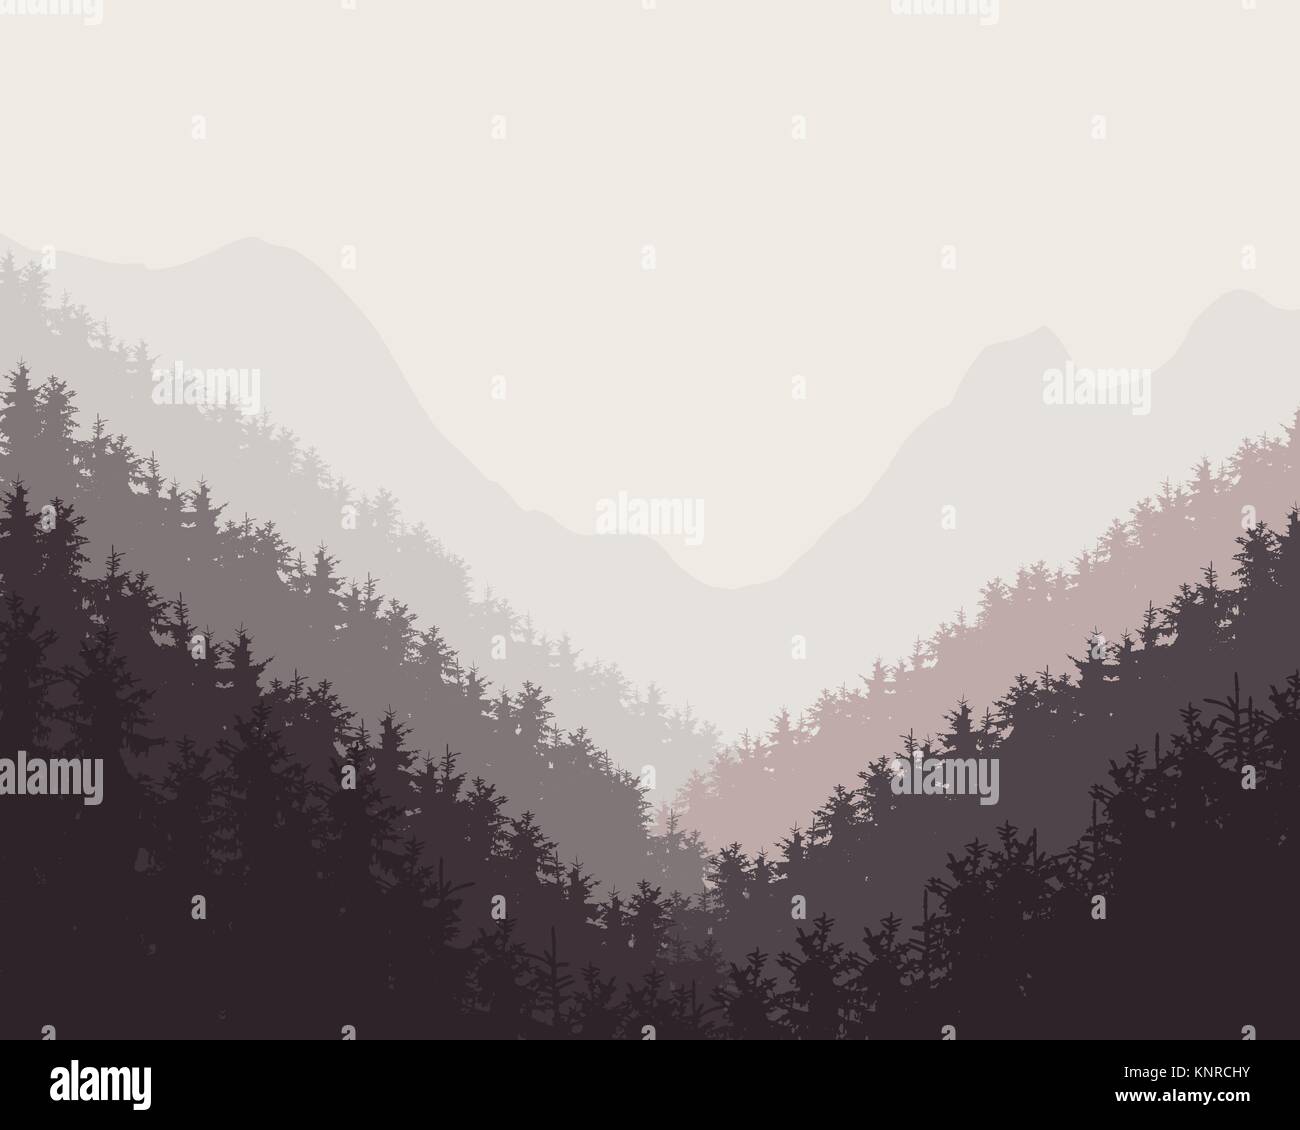 Retrò vettore illustrazione di una foresta di inverno con neve e sfondi nebuloso Illustrazione Vettoriale